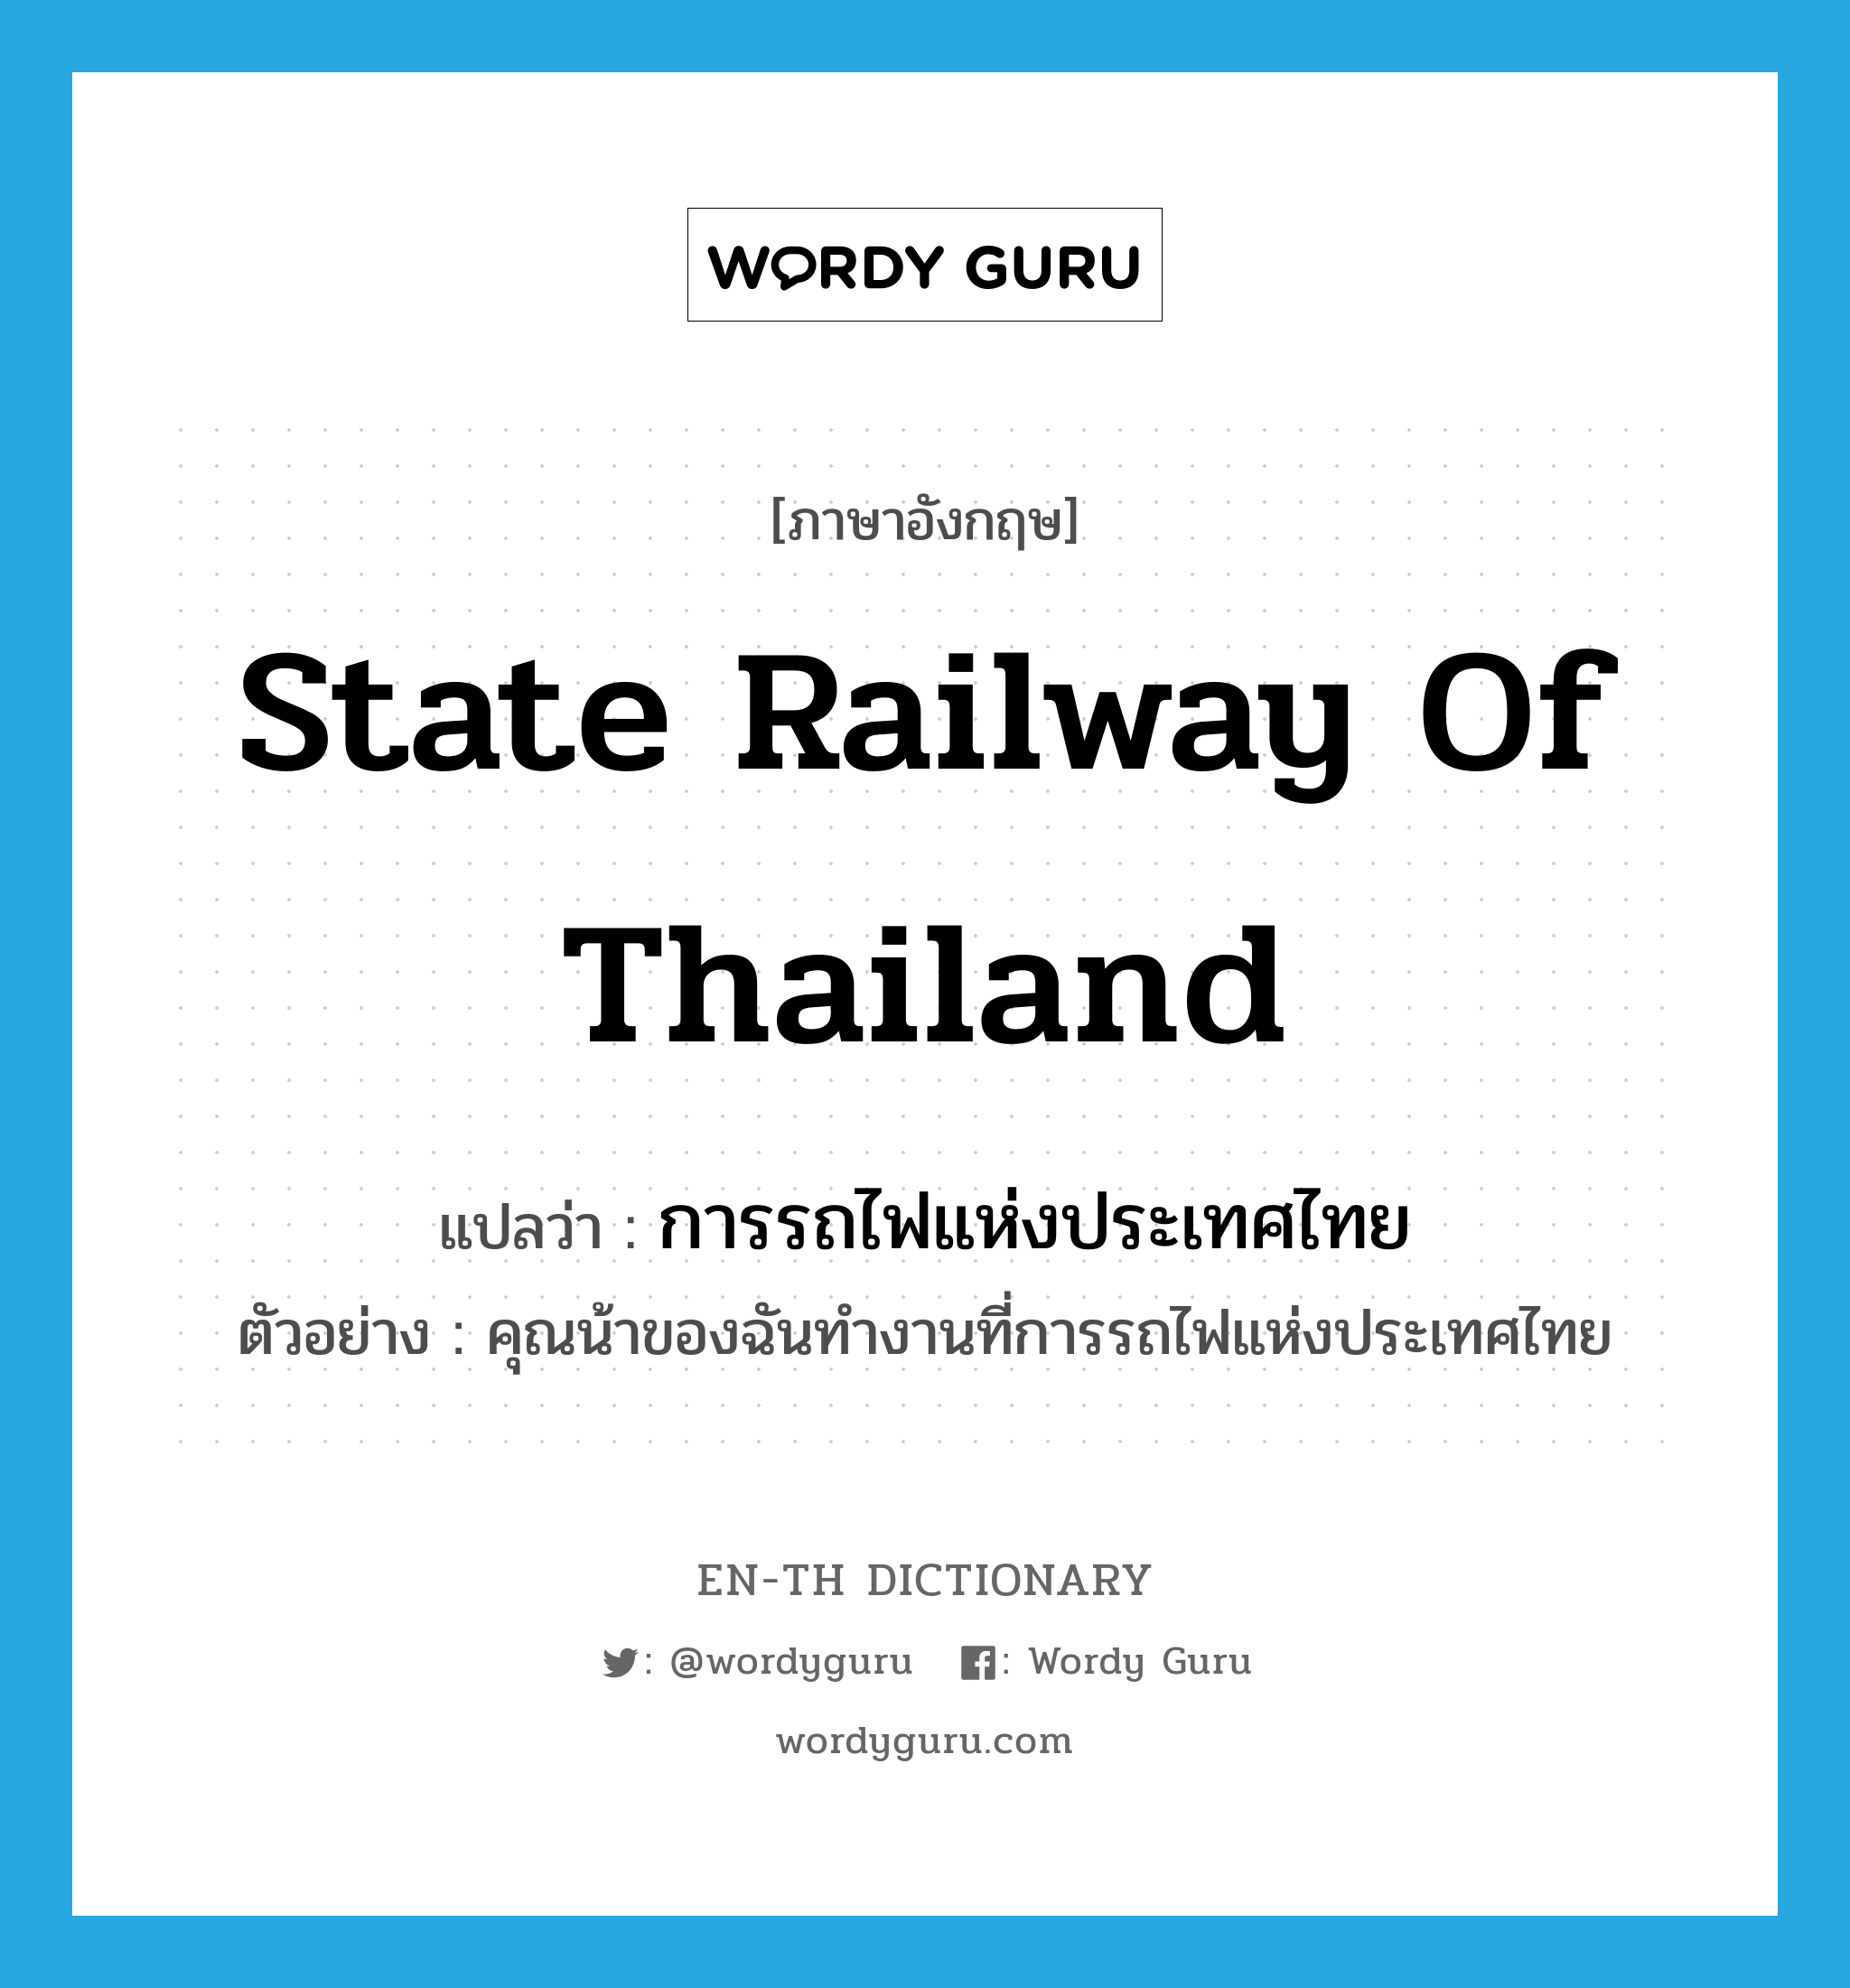 การรถไฟแห่งประเทศไทย ภาษาอังกฤษ?, คำศัพท์ภาษาอังกฤษ การรถไฟแห่งประเทศไทย แปลว่า State Railway of Thailand ประเภท N ตัวอย่าง คุณน้าของฉันทำงานที่การรถไฟแห่งประเทศไทย หมวด N